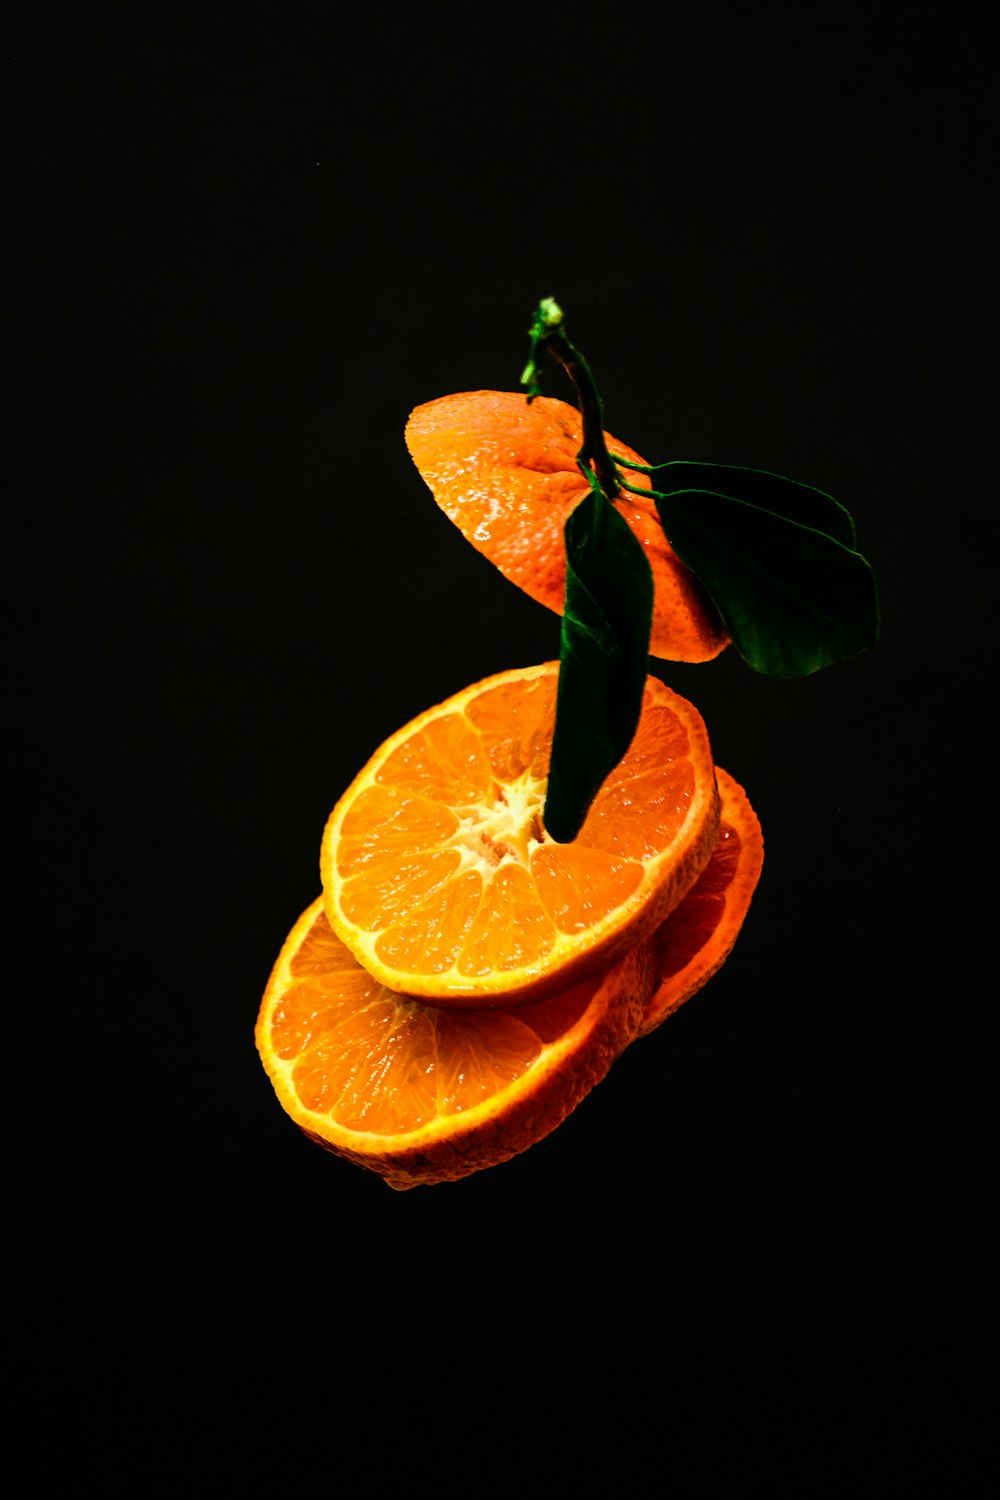 Từng ngon từng mảnh quả cam tươi mát - bạn đã bao giờ cảm nhận được độ ngon ngọt của chúng chưa? Hãy đến Unsplash và xem bức ảnh miễn phí này với những lát cam rực rỡ trên nền đen đầy bí ẩn, đảm bảo sẽ khiến bạn muốn cắn ngay vào chúng!